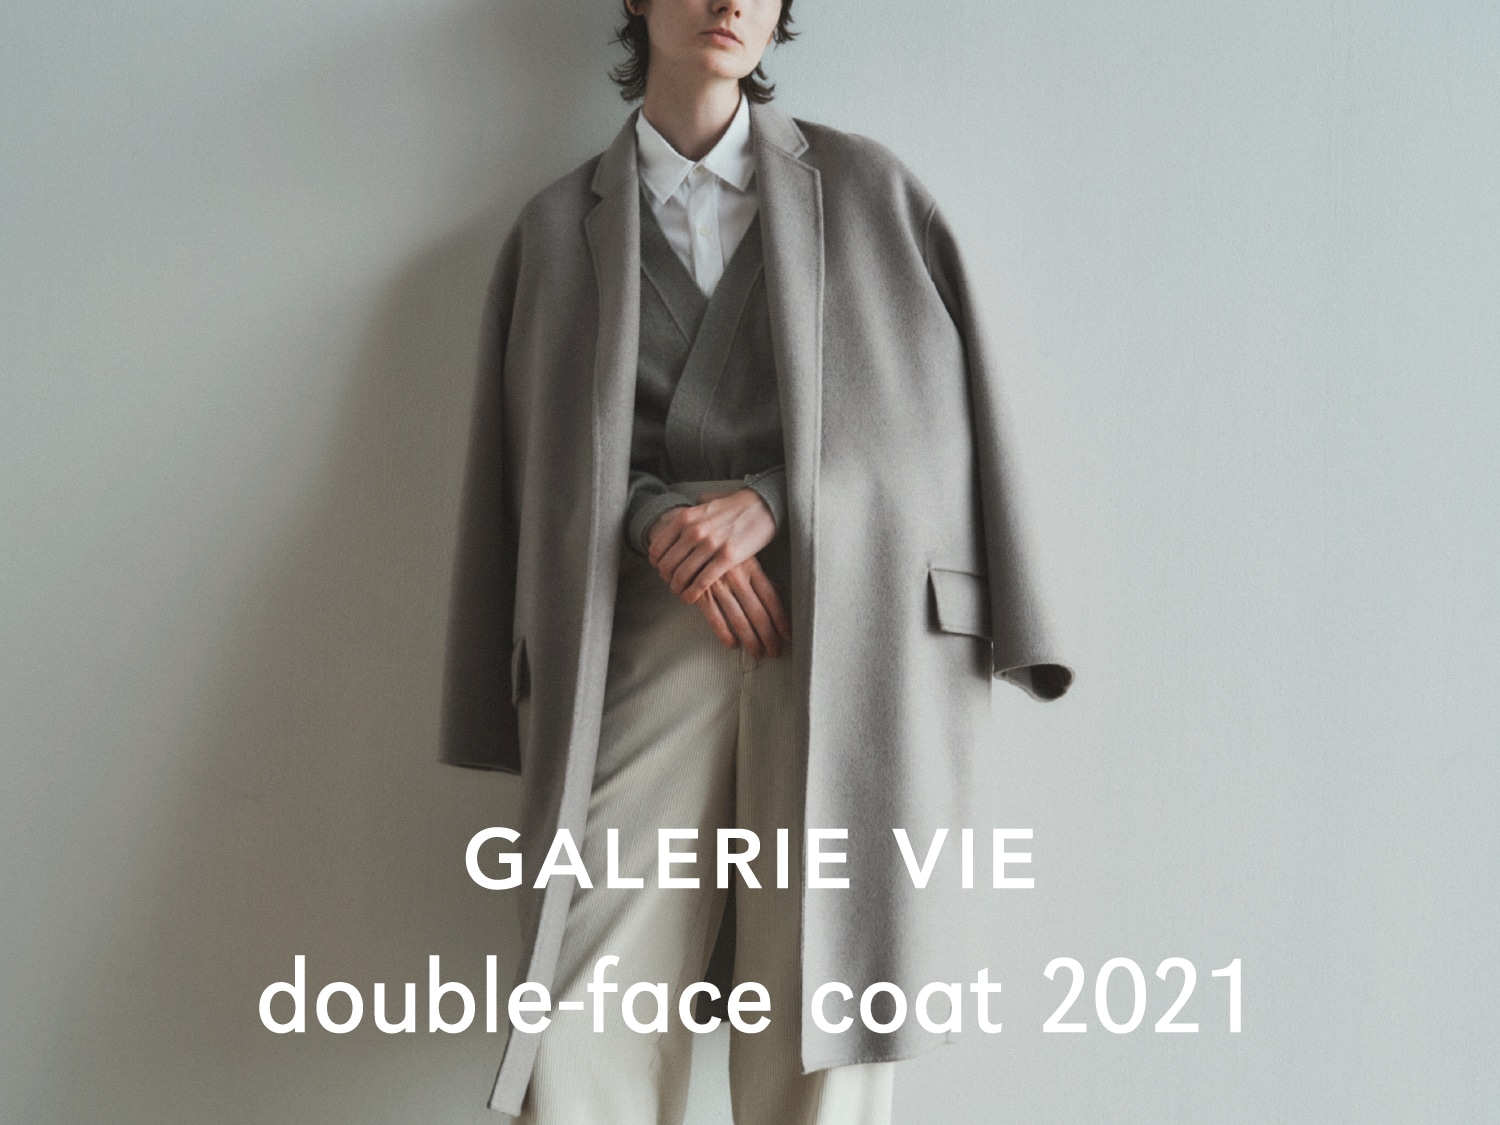 GALERIE VIE double-face coat 2021